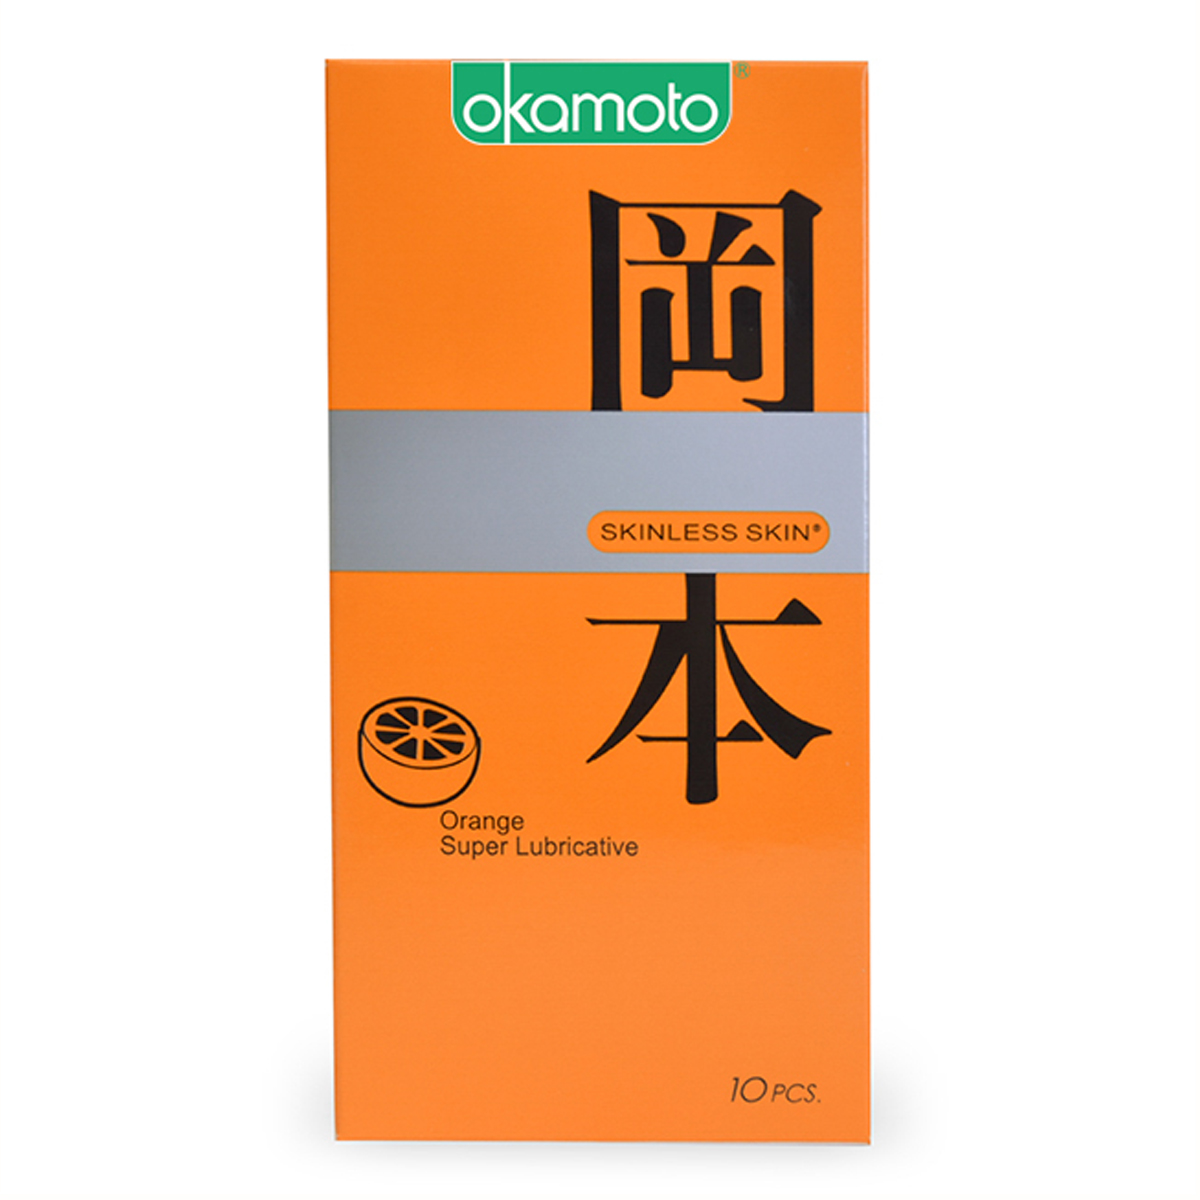 Bao cao su hương Cam, Sáng bóng mềm mại Okamoto Skinless Skin Orange Lub-10's với công nghệ Sheerlon siêu mỏng và vô cùng mềm mại sẽ mang đến cho bạn cảm giác “thăng hoa” nồng nàn, cháy bỏng. Điểm nổi bật của sản phẩm bao cao su này là hương cam ngọt ngào, quyến rũ giúp tăng thêm “khoái cảm” cho đôi bạn.